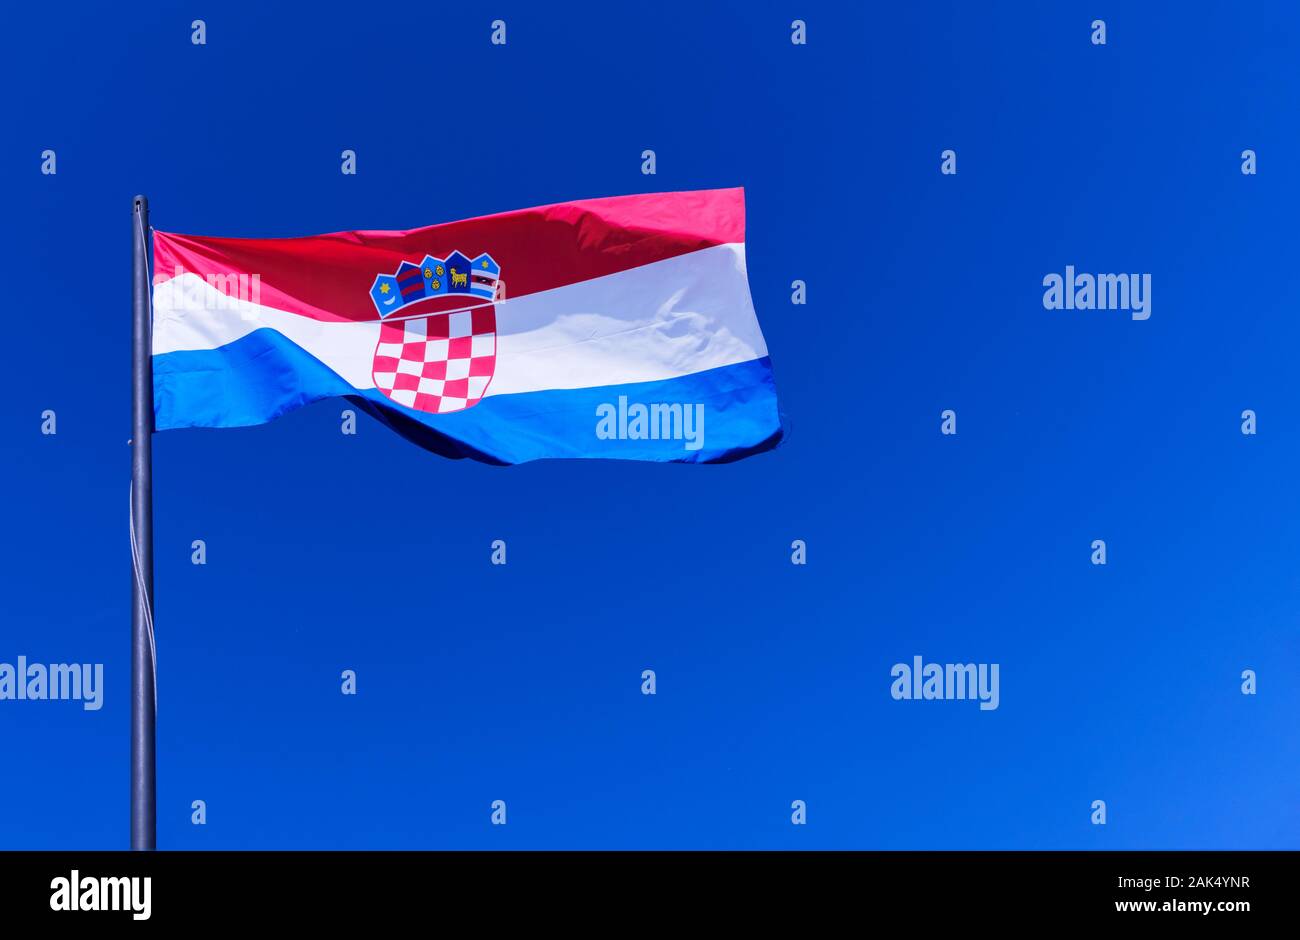 La bandiera nazionale croata, o Tricolor, vola completamente aperta contro un cielo blu brillante. Il stemma croato è chiaramente visibile Foto Stock